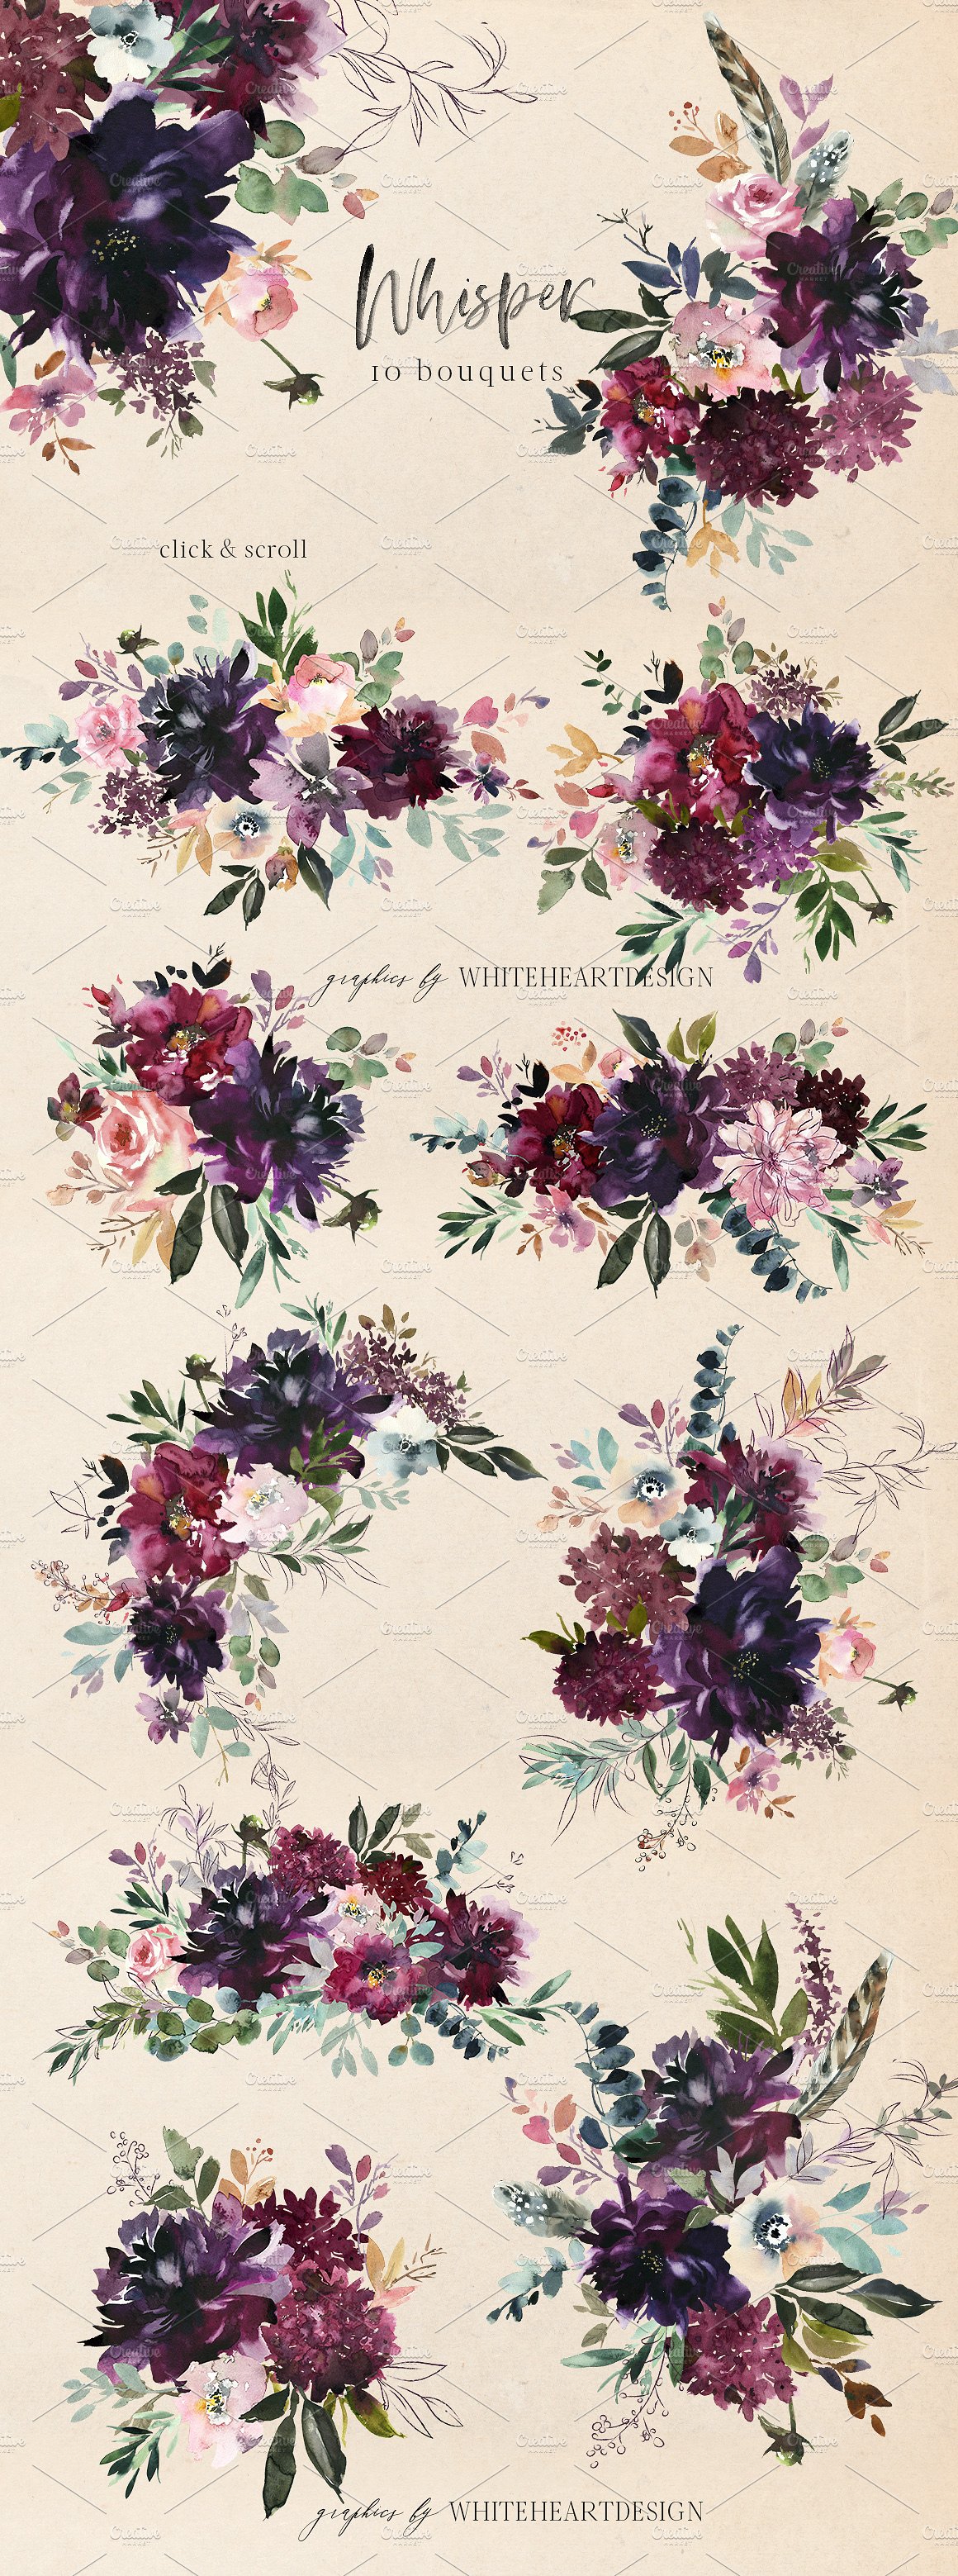 浪漫暗色调水彩花卉剪贴画 Whisper Watercolor Floral Clipart插图(1)